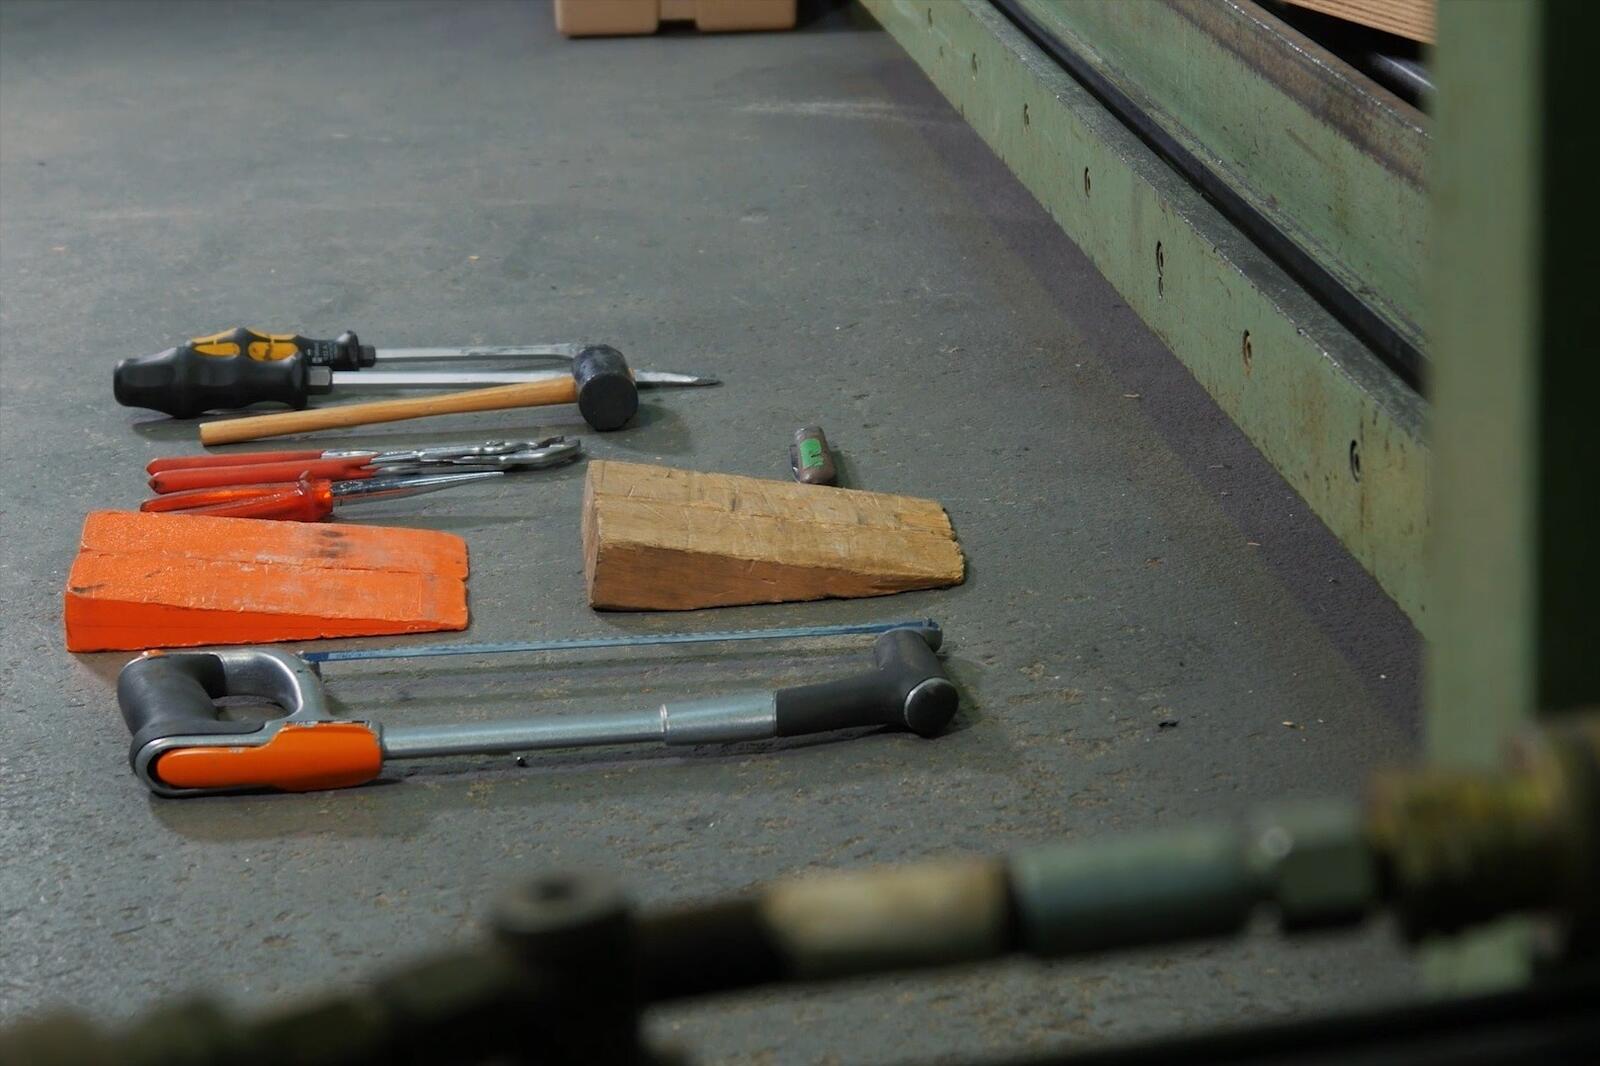 Der übliche Werkzeugsatz für manuellen Angriff bei Prüfung der Einbruchhemmung. Einbrecher benutzen in der Regel das gleiche Werkzeug.